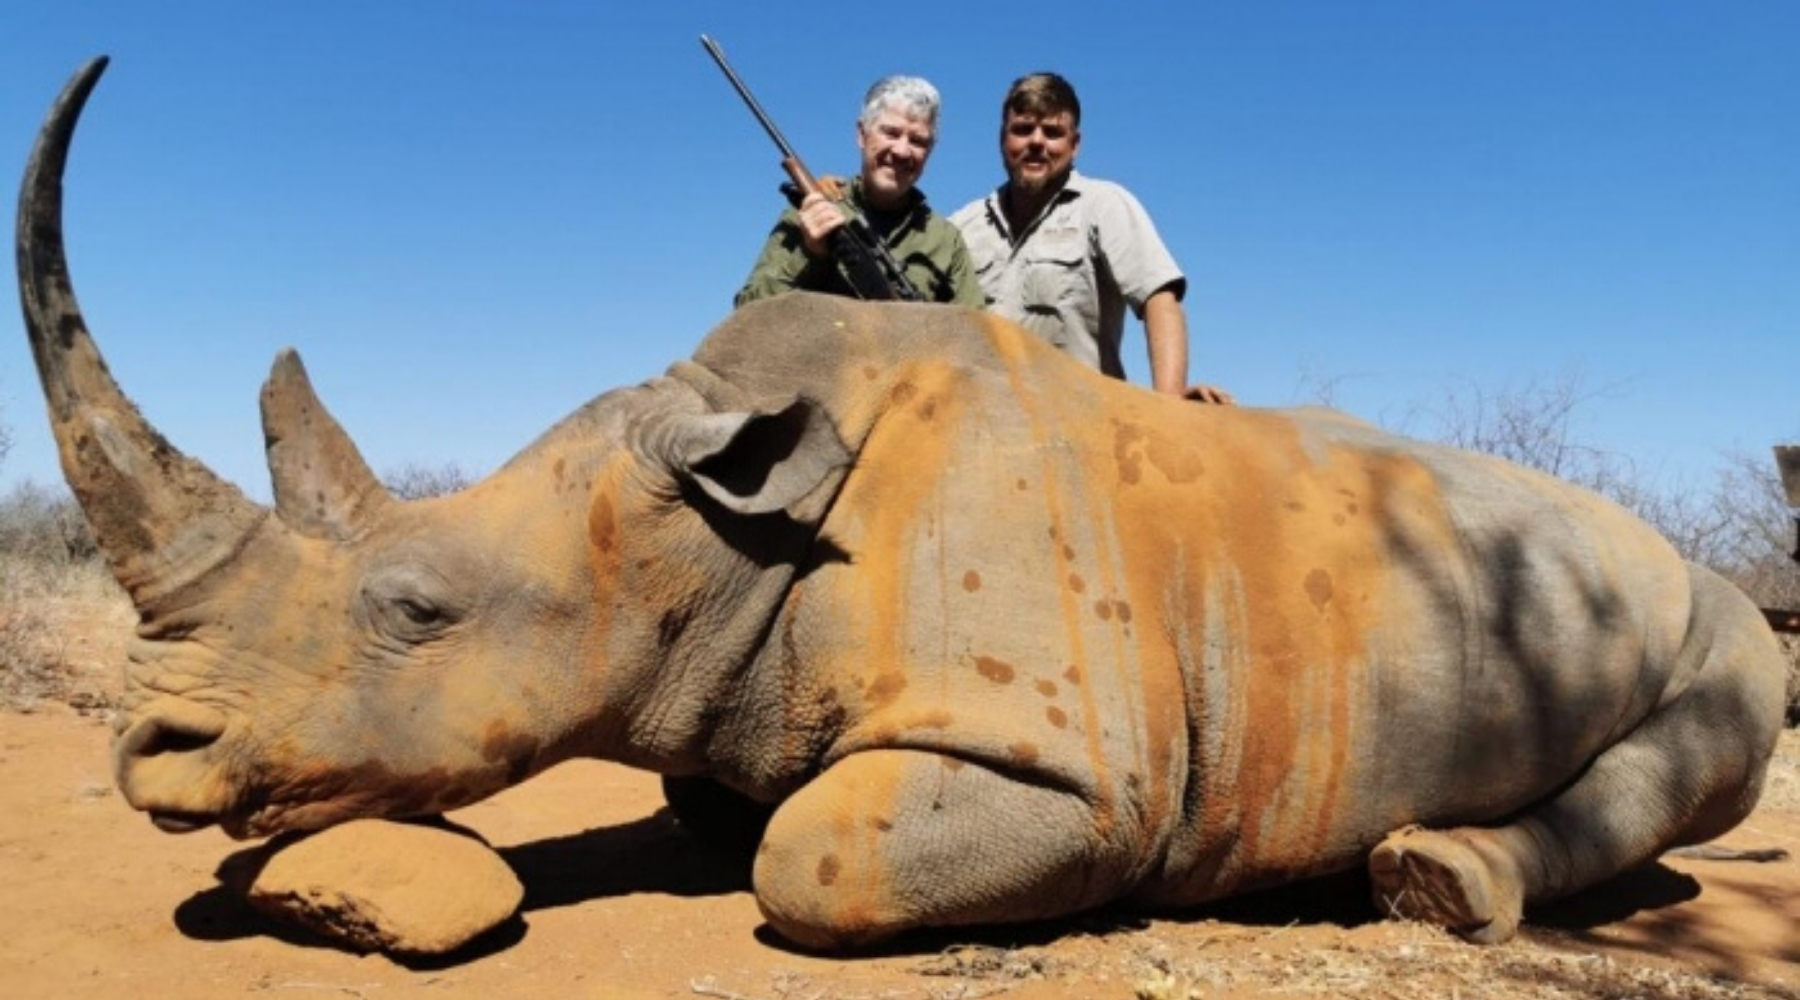 Des chasseurs posent avec un rhinocéros mort.